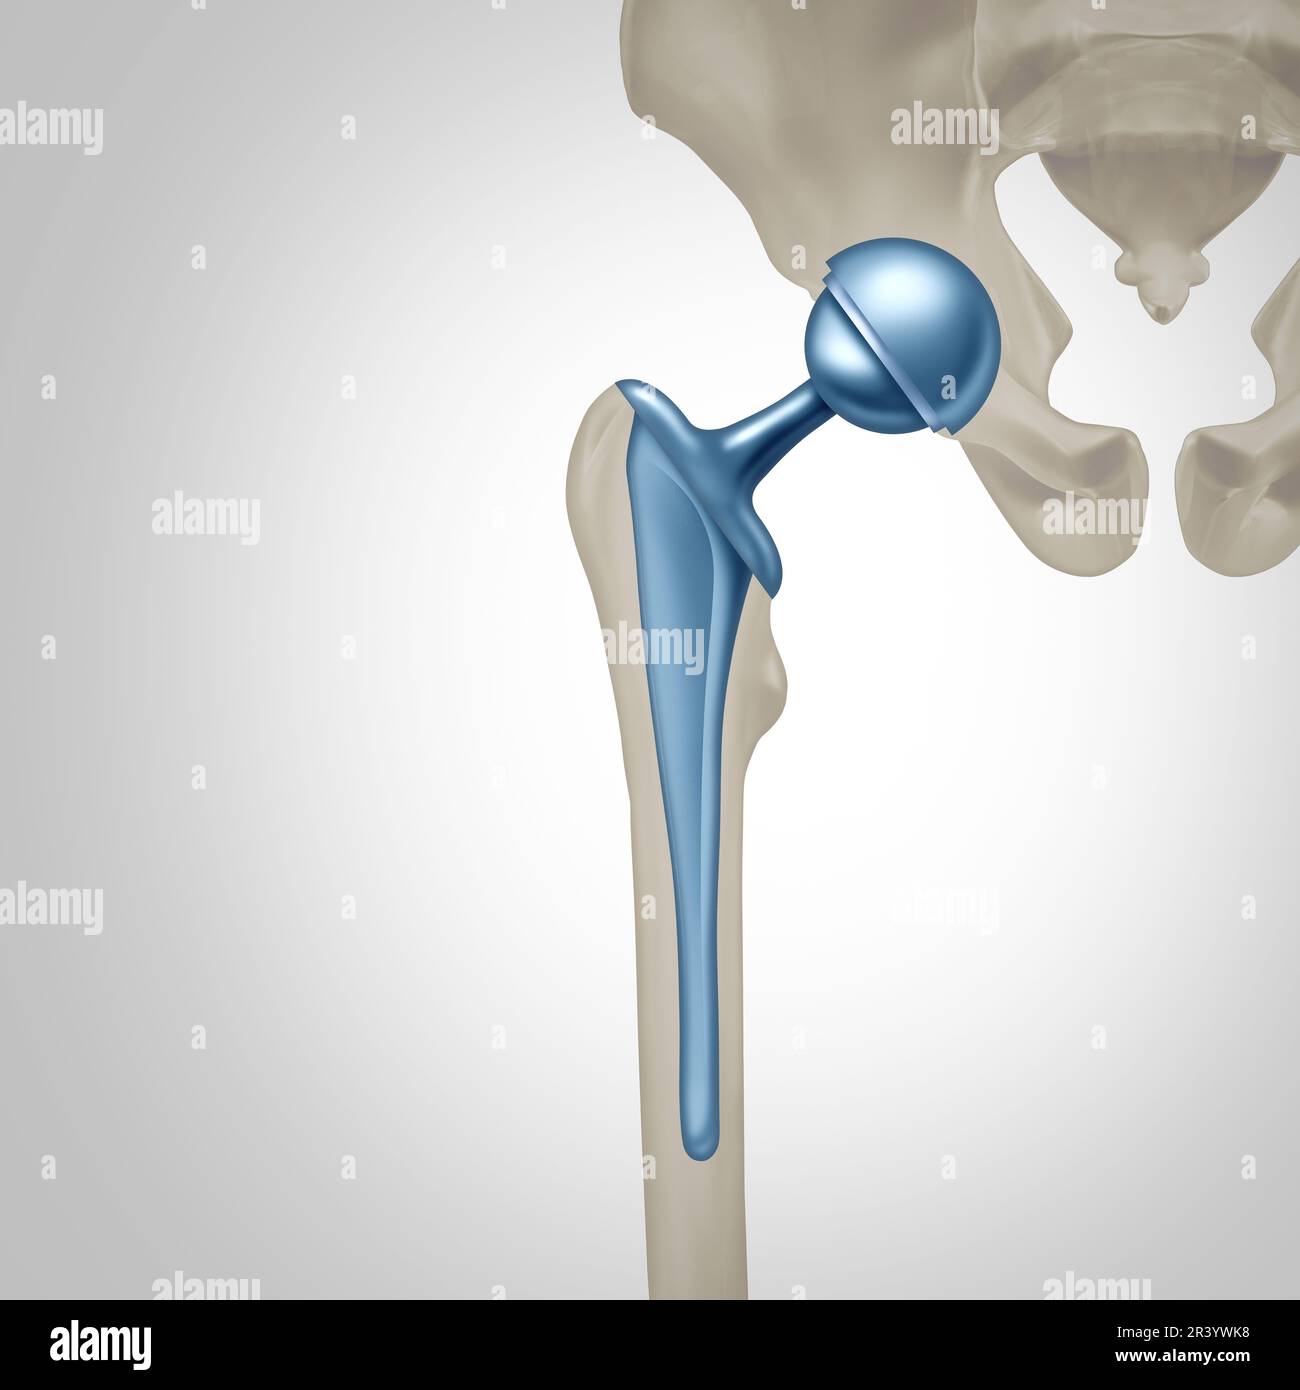 Concetto di Chirurgia di sostituzione dell'anca come articolazione artificiale o protesi con chirurgia ortopedica inserendo una sfera di metallo e una presa per sostituire un danneggiato da Foto Stock